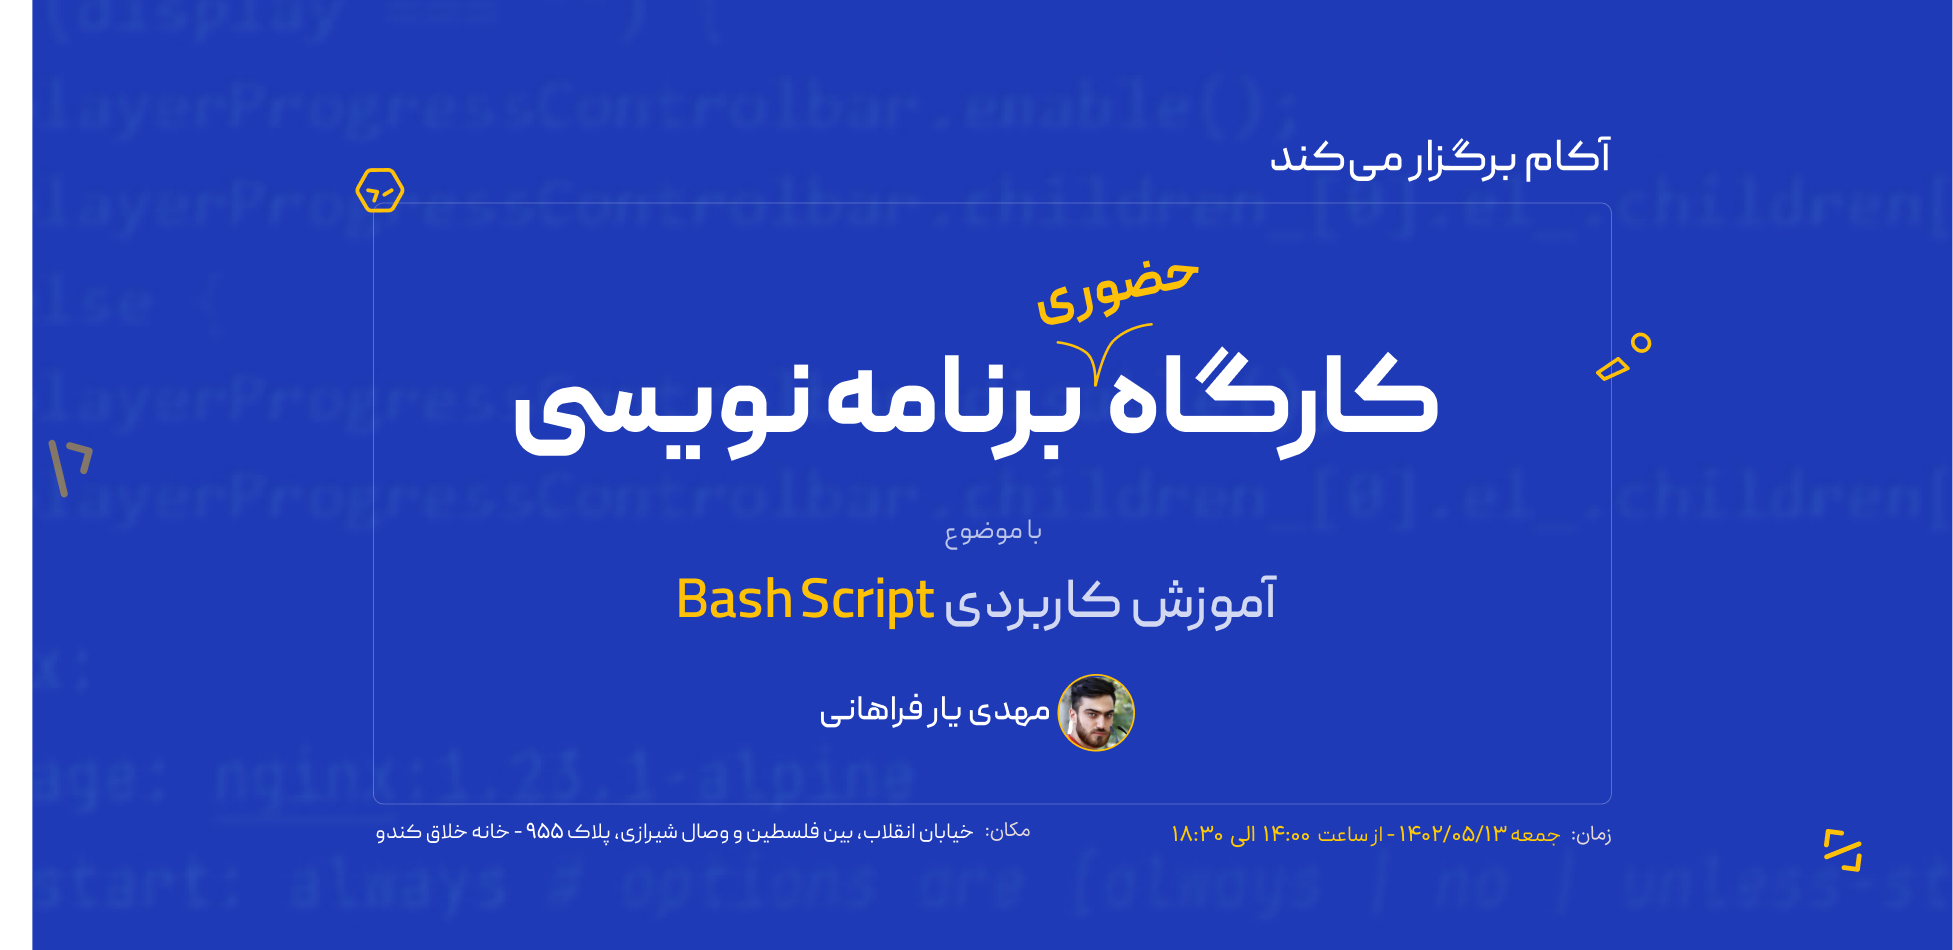 آموزش کاربردی Bash Script